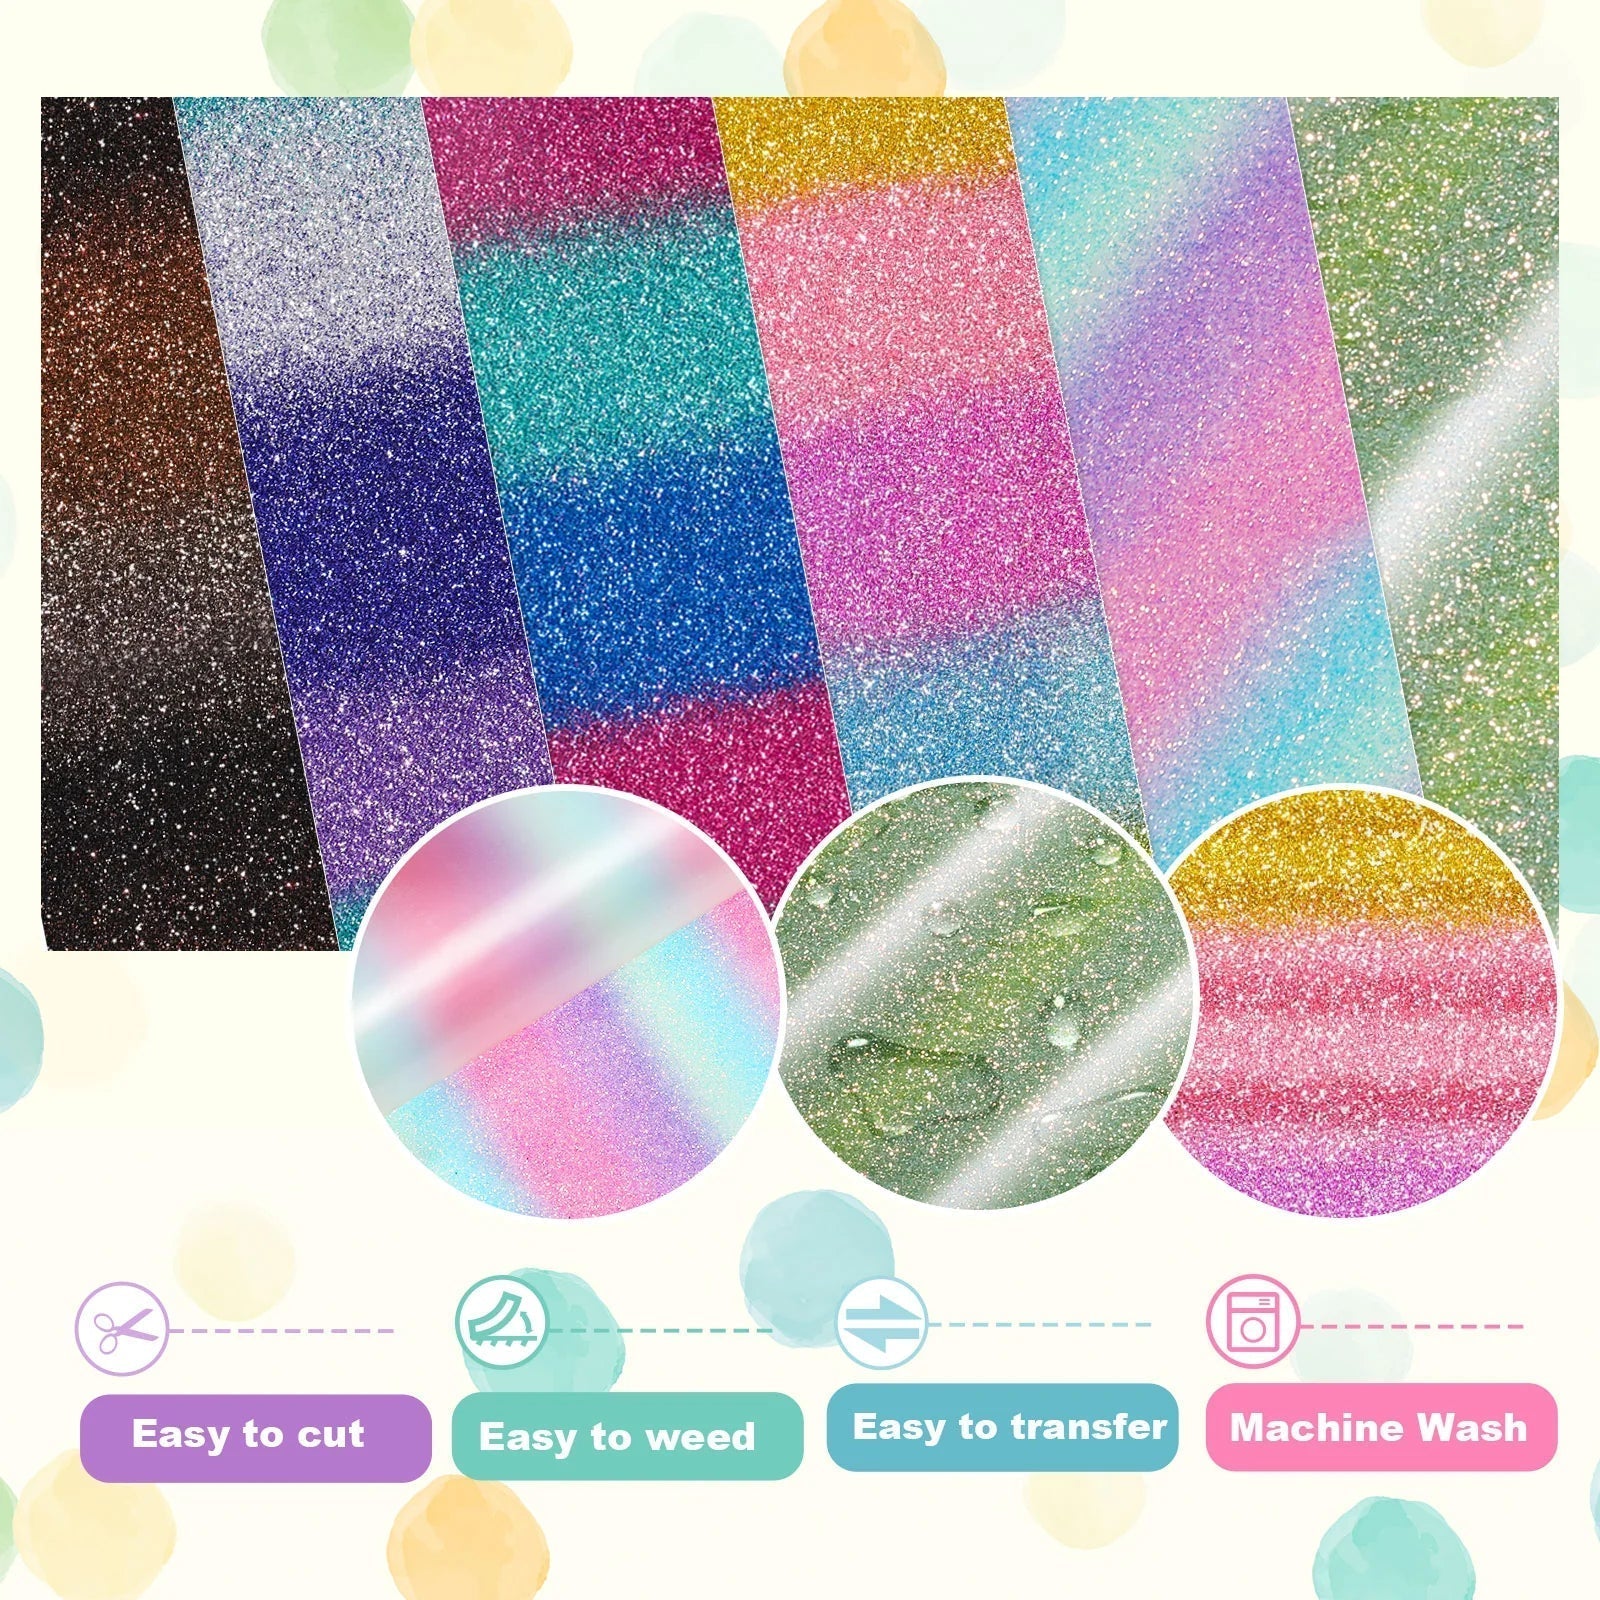 Teckwrap Ombre Glitter Heat Transfer Vinyl - Rainbow Purple - Cutey K Blanks